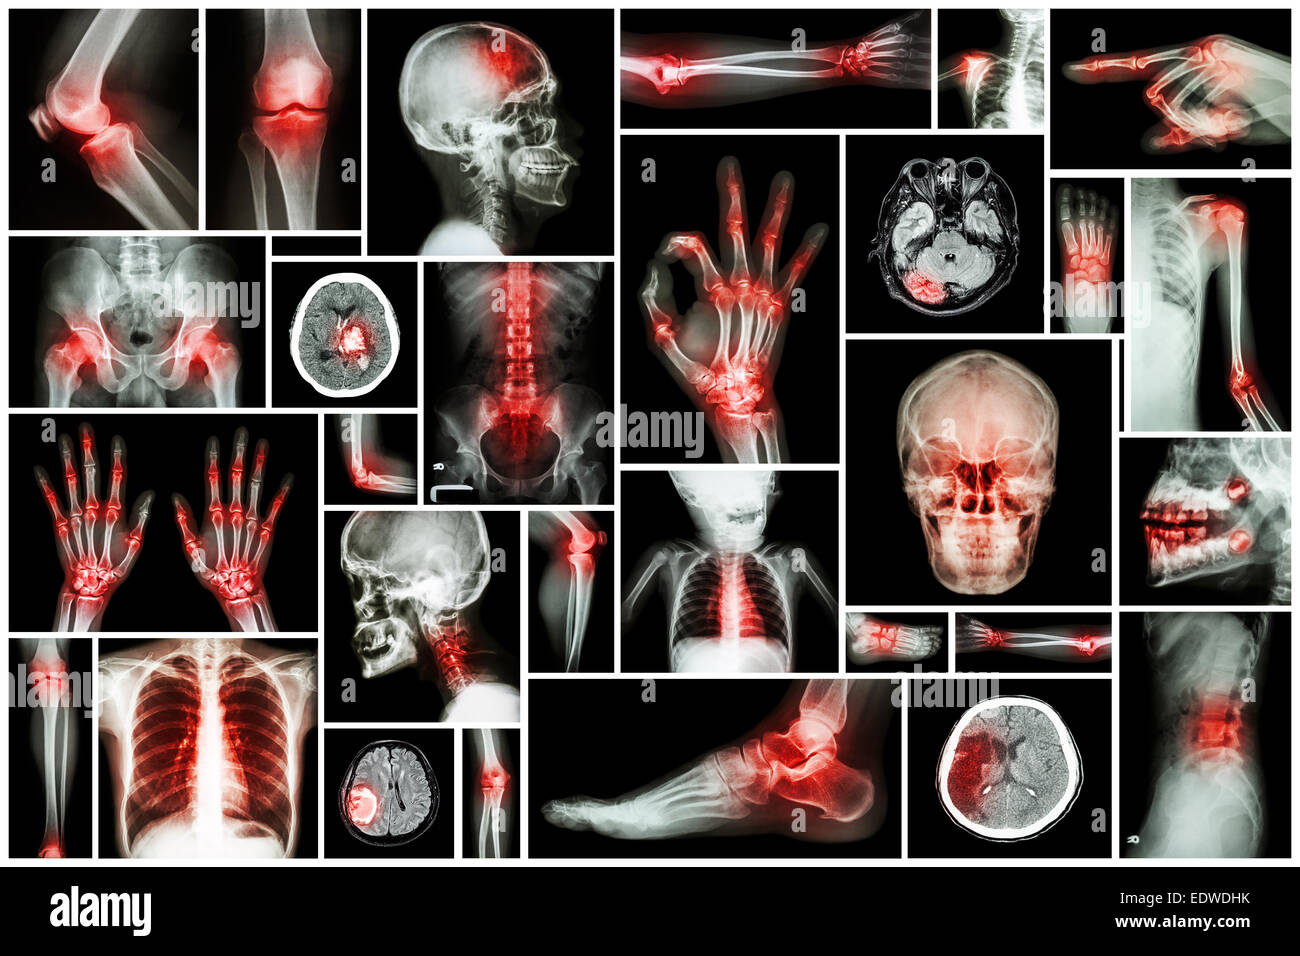 X-ray multiple part of human with multiple disease (stroke, arthritis, gout, rheumatoid, brain tumor, osteoarthritis, etc) Stock Photo